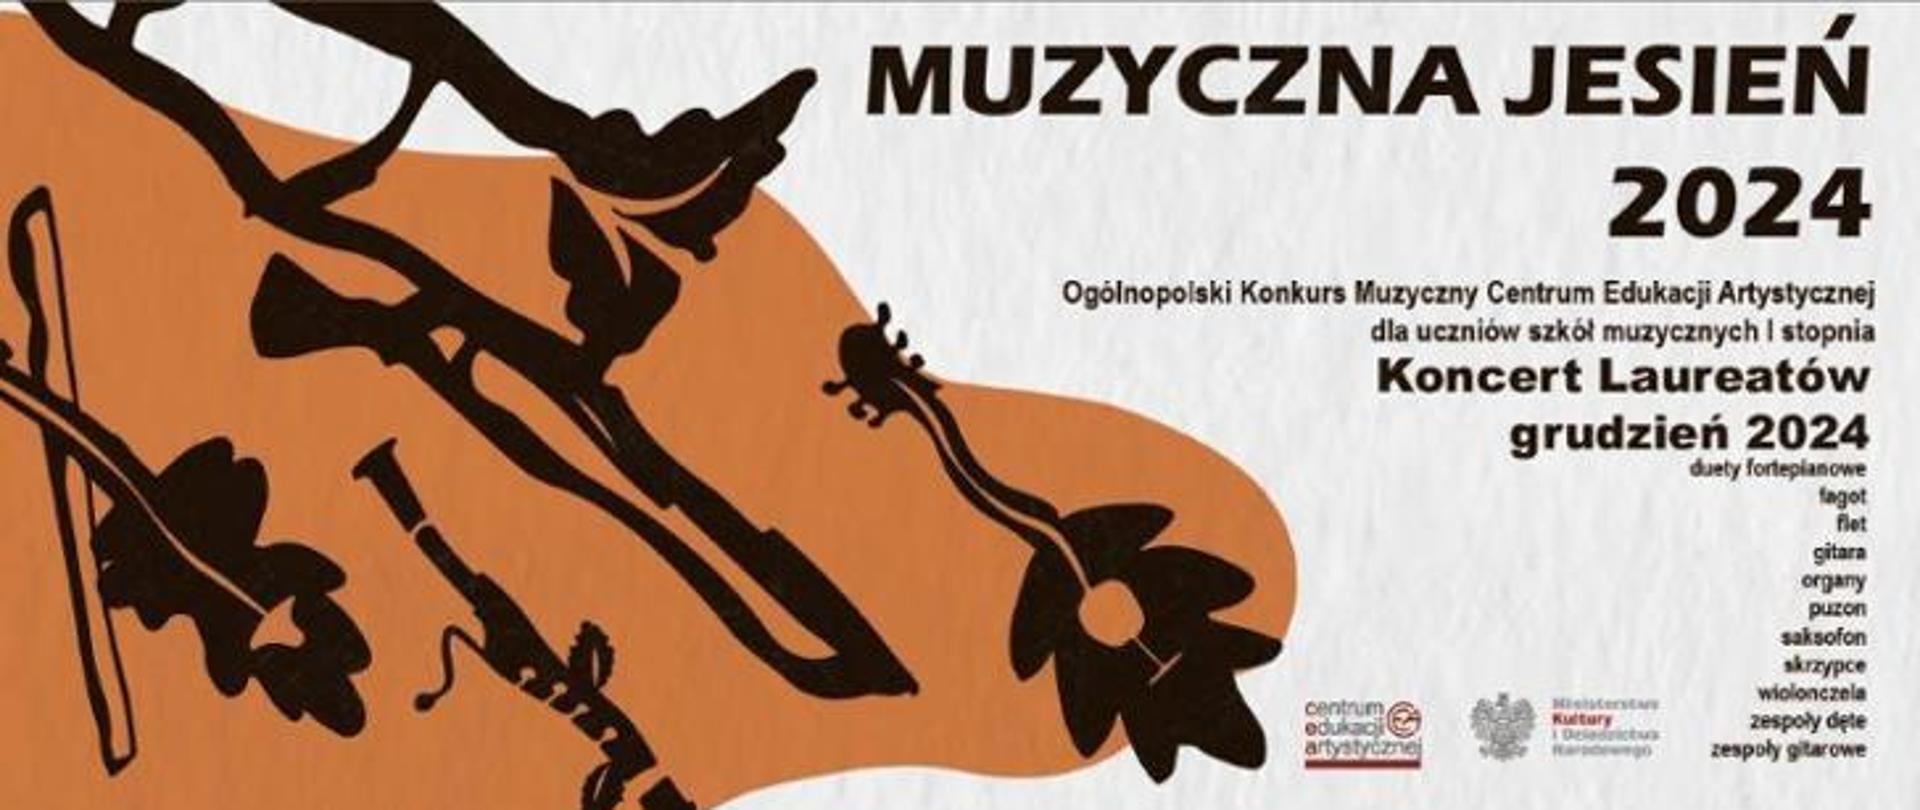 Informacje dotyczące Ogólnopolskiego Konkursu Muzycznego CEA "Muzyczna Jesień" 2024